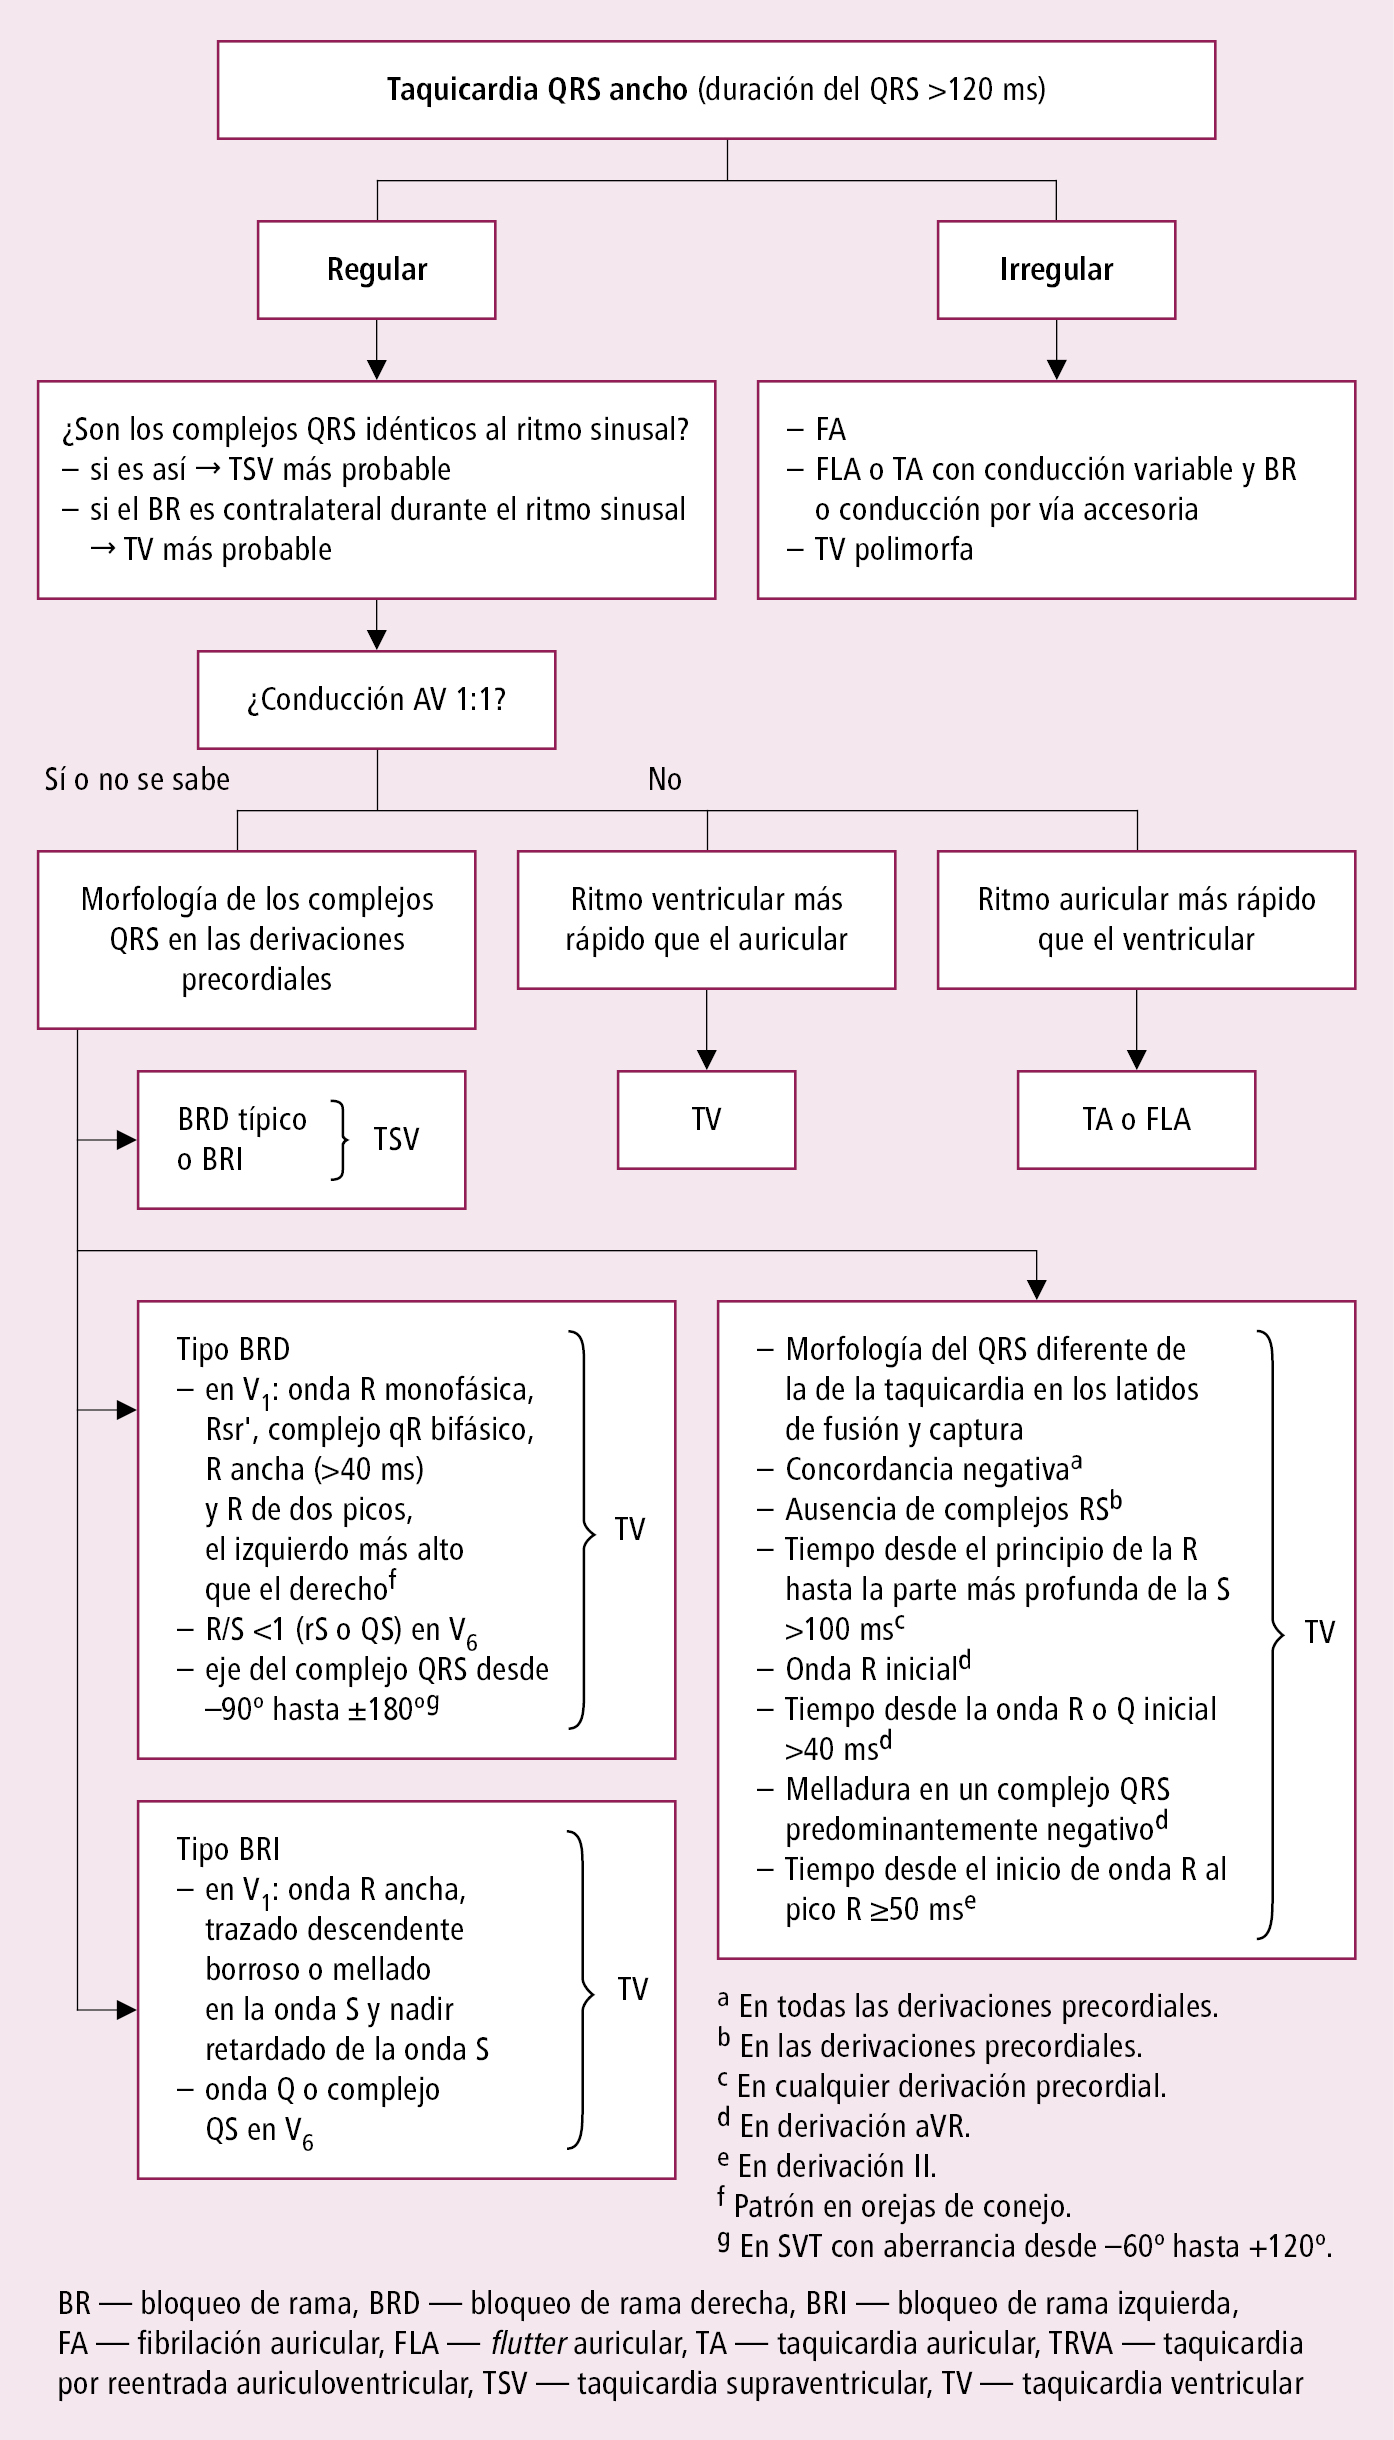    Fig. 2.6-3.  Diagnóstico diferencial de las taquicardias con complejos QRS anchos (a partir de las guías ESC 2019, modificado) 